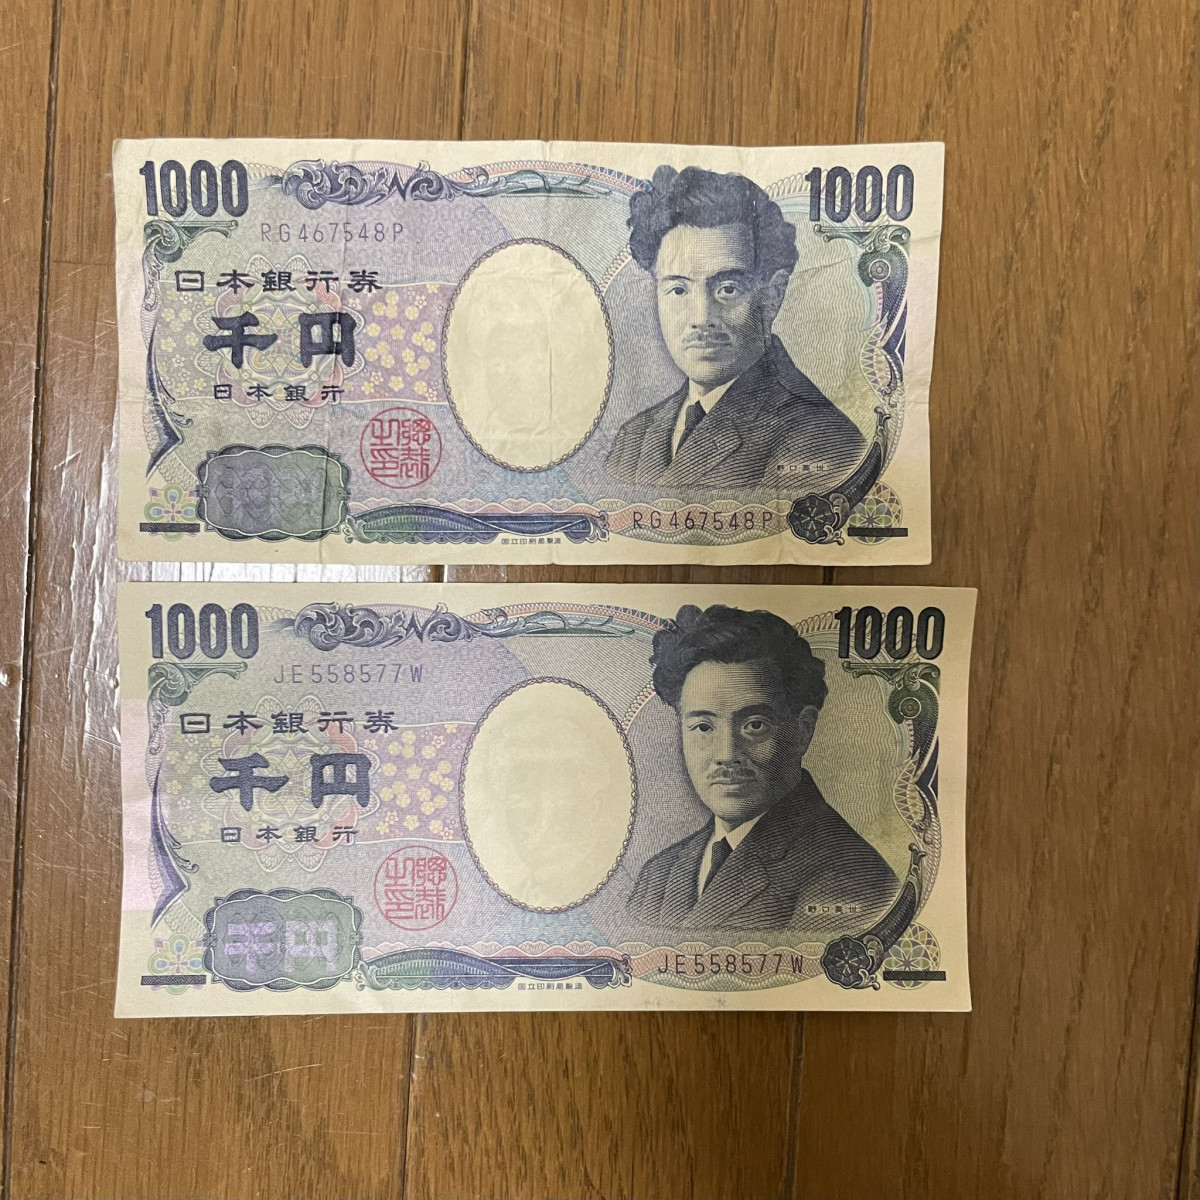 尺寸小很多的1000日圓：是假錢嗎？在日本發現這個要怎樣做